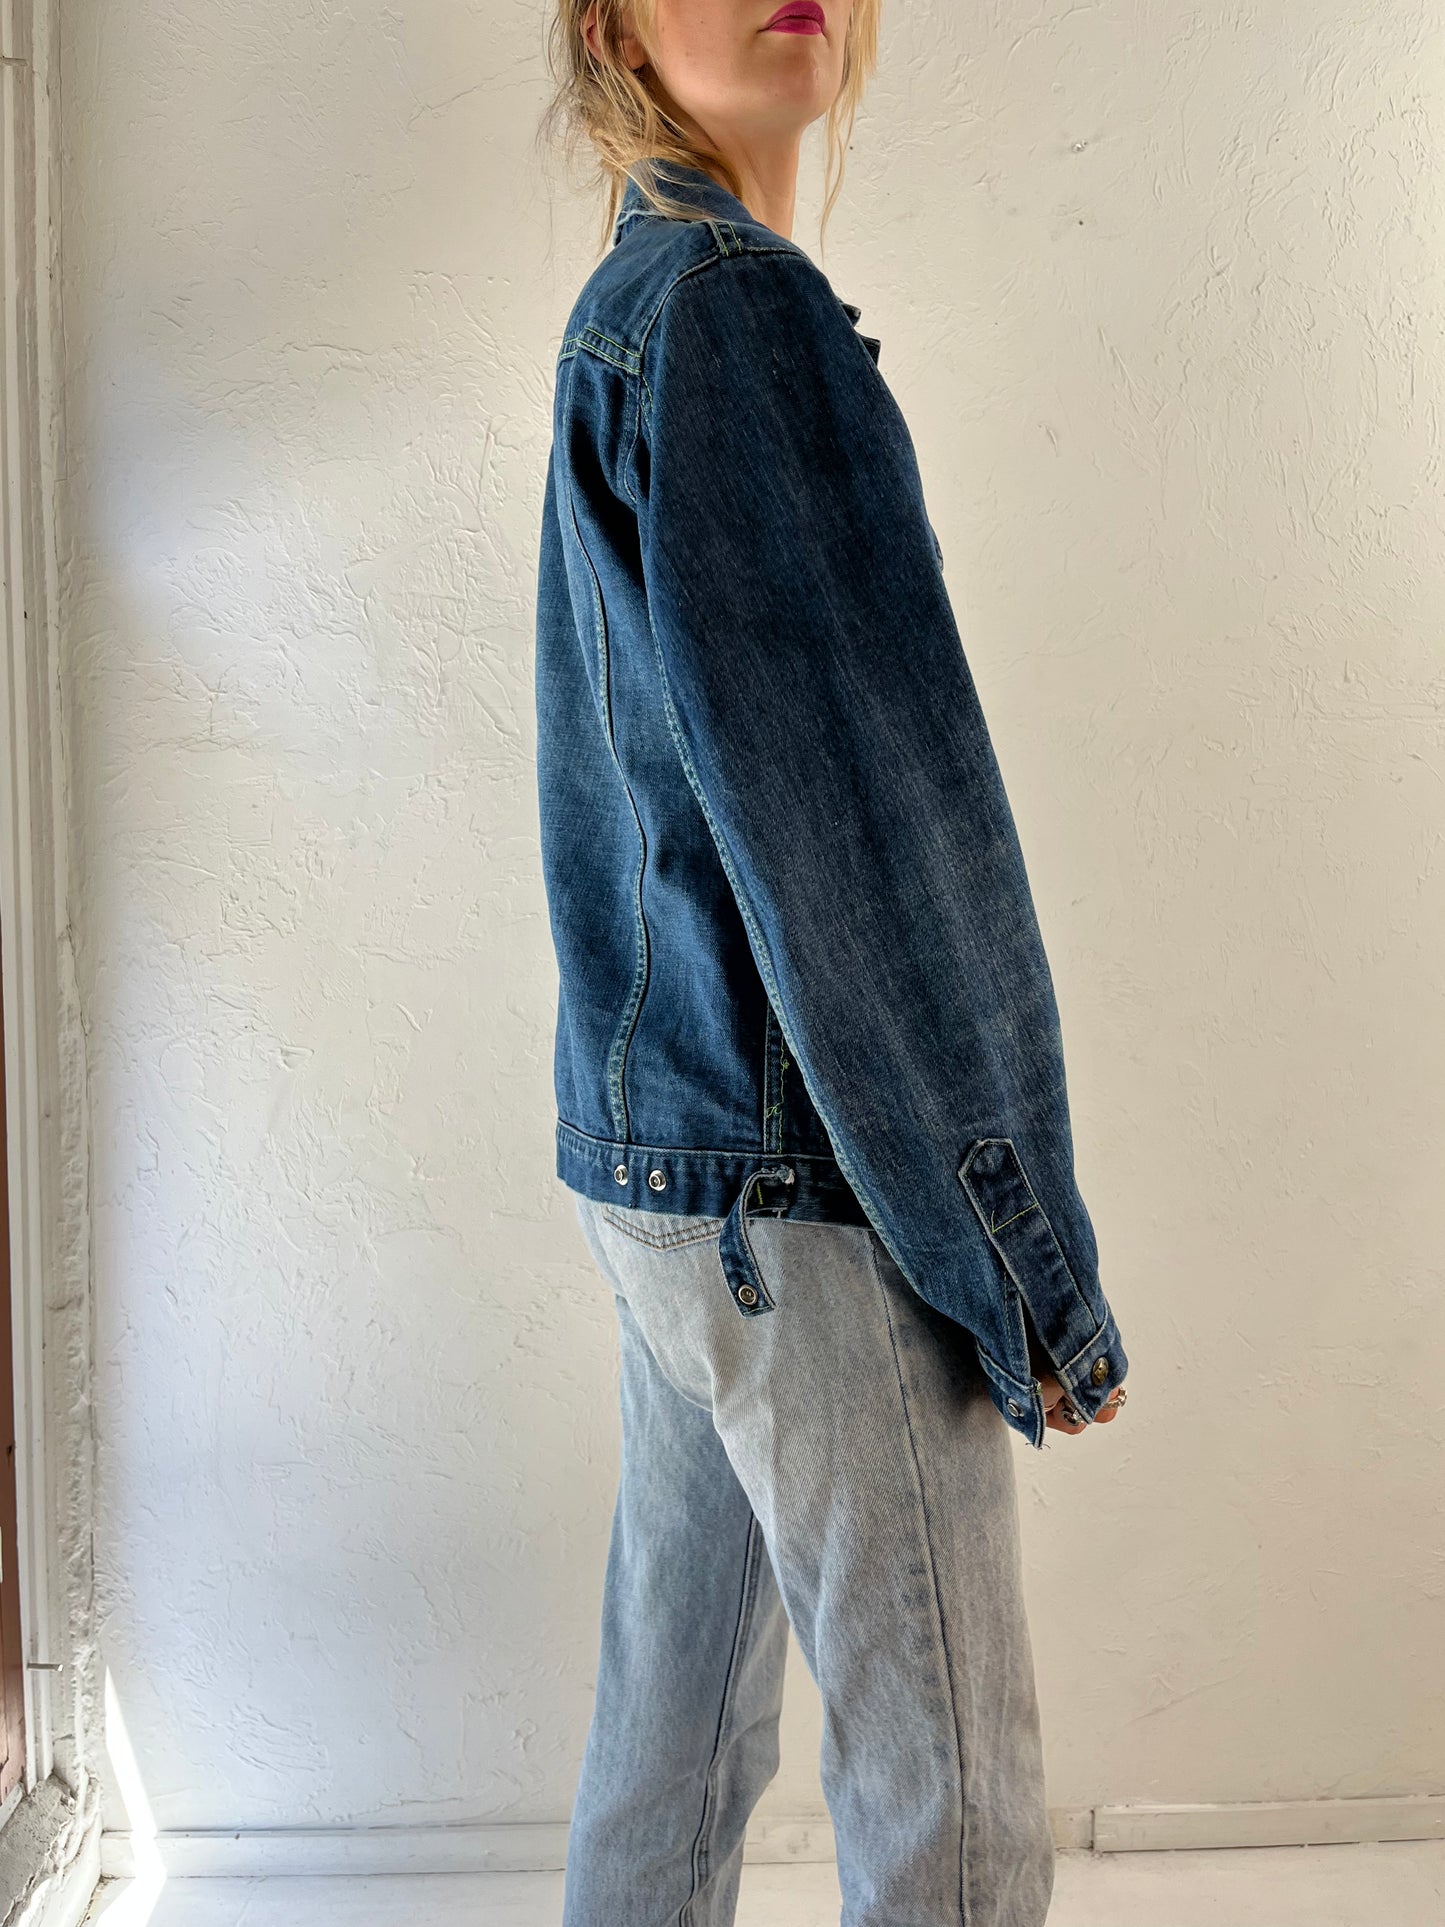 90s 'GWG' Snap Denim Jacket / Vintage Jean Jacket / Large